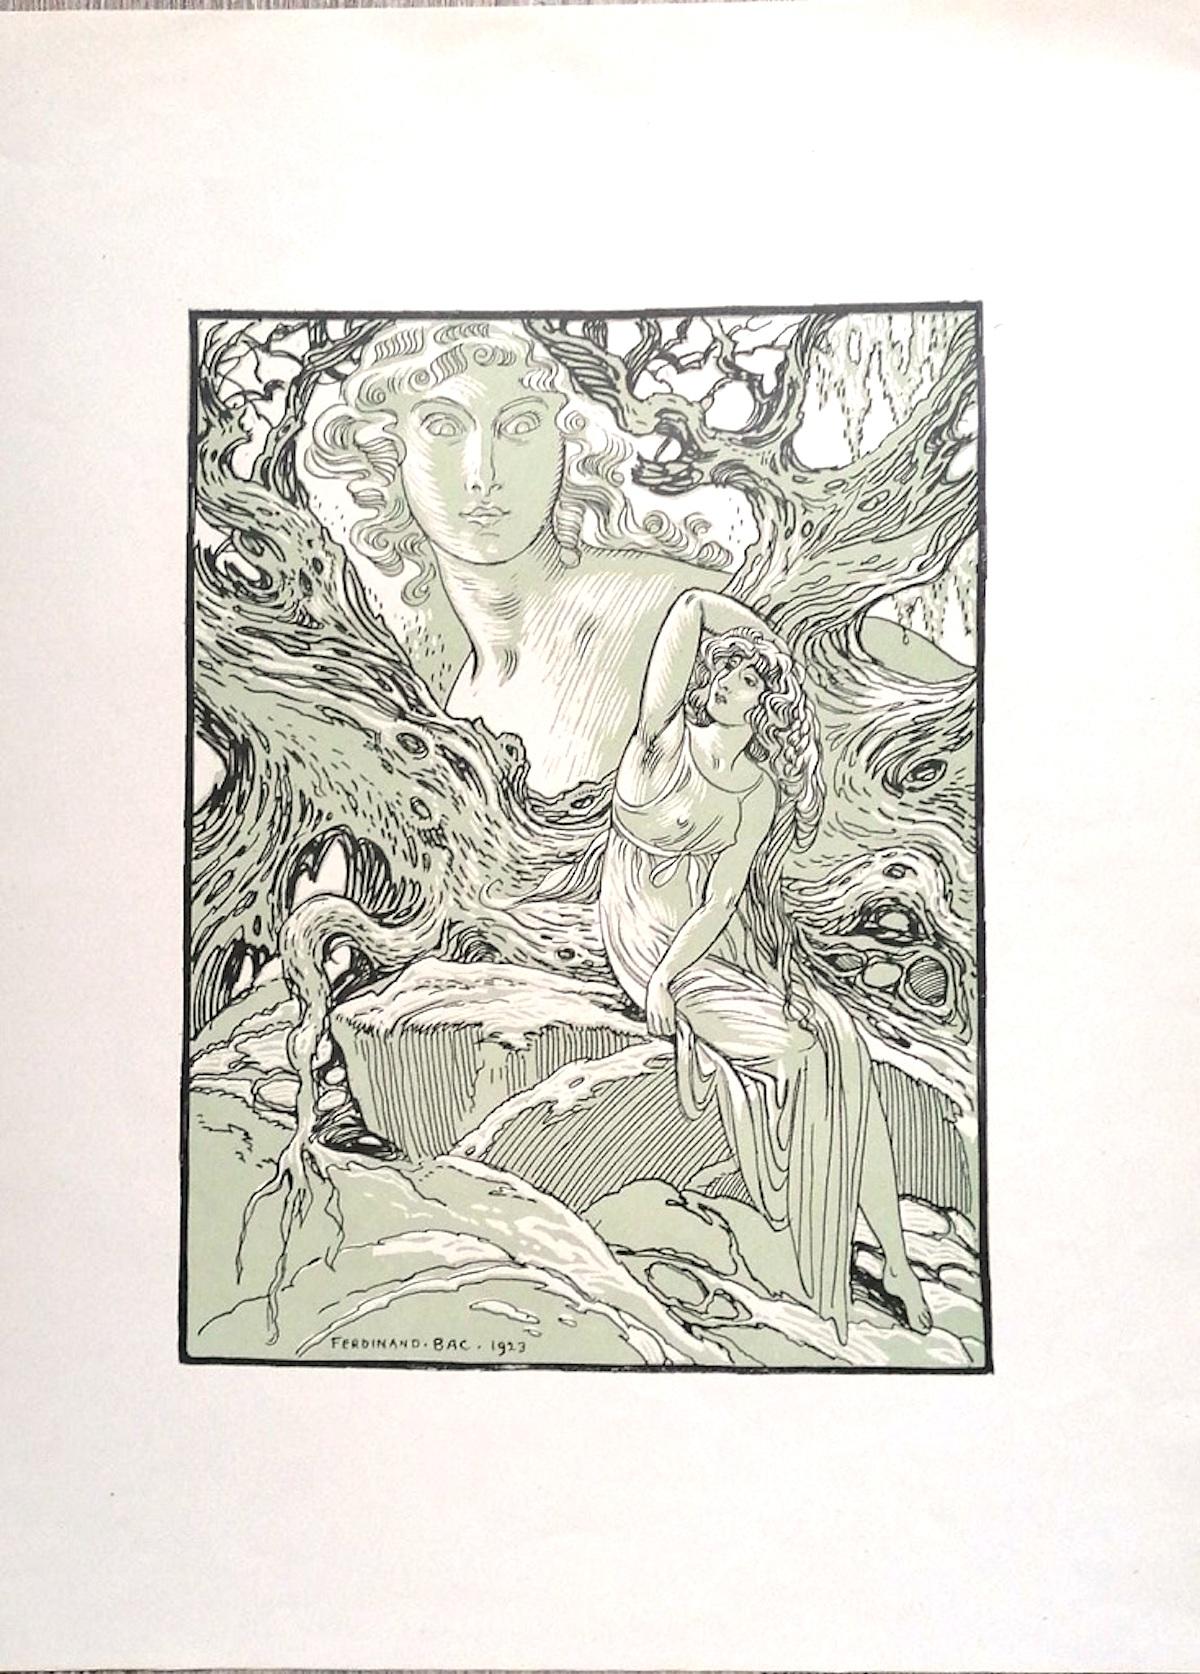 Die Göttin ist ein originelles modernes Kunstwerk von Ferdinand Bac (1859 - 1952) aus dem Jahr 1923.

Signiert und datiert auf der Platte in der linken unteren Ecke: Ferdinand Bac 1923.

Original-Lithographie auf Elfenbeinpapier.

Perfekte